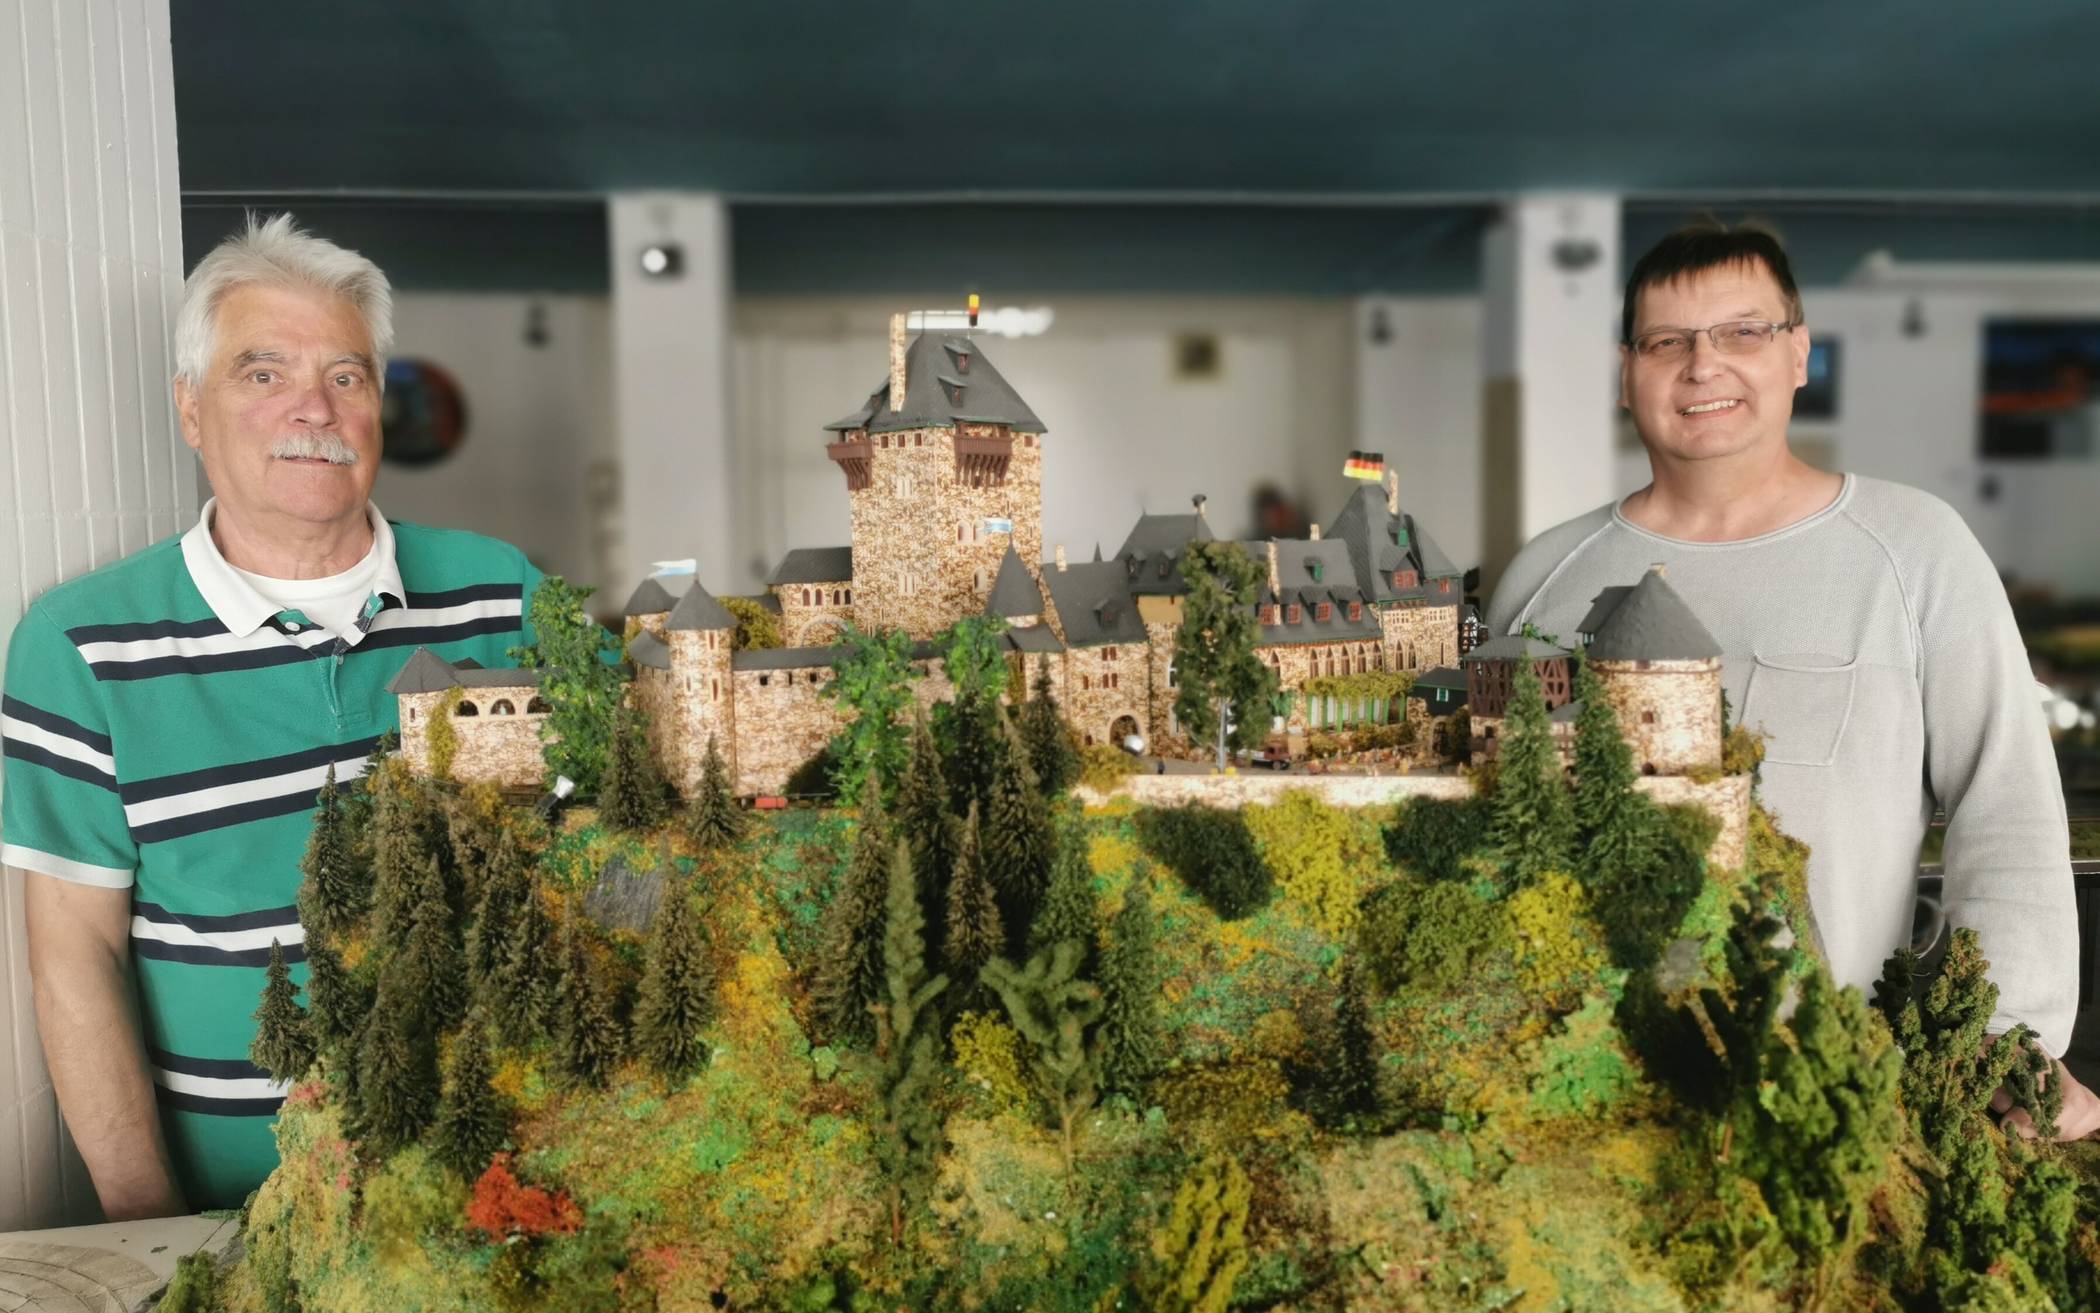  Peter van Putten (li.) und Stephan Volter von der Wuppertal-Achse vor dem Modell von Schloss Burg. 